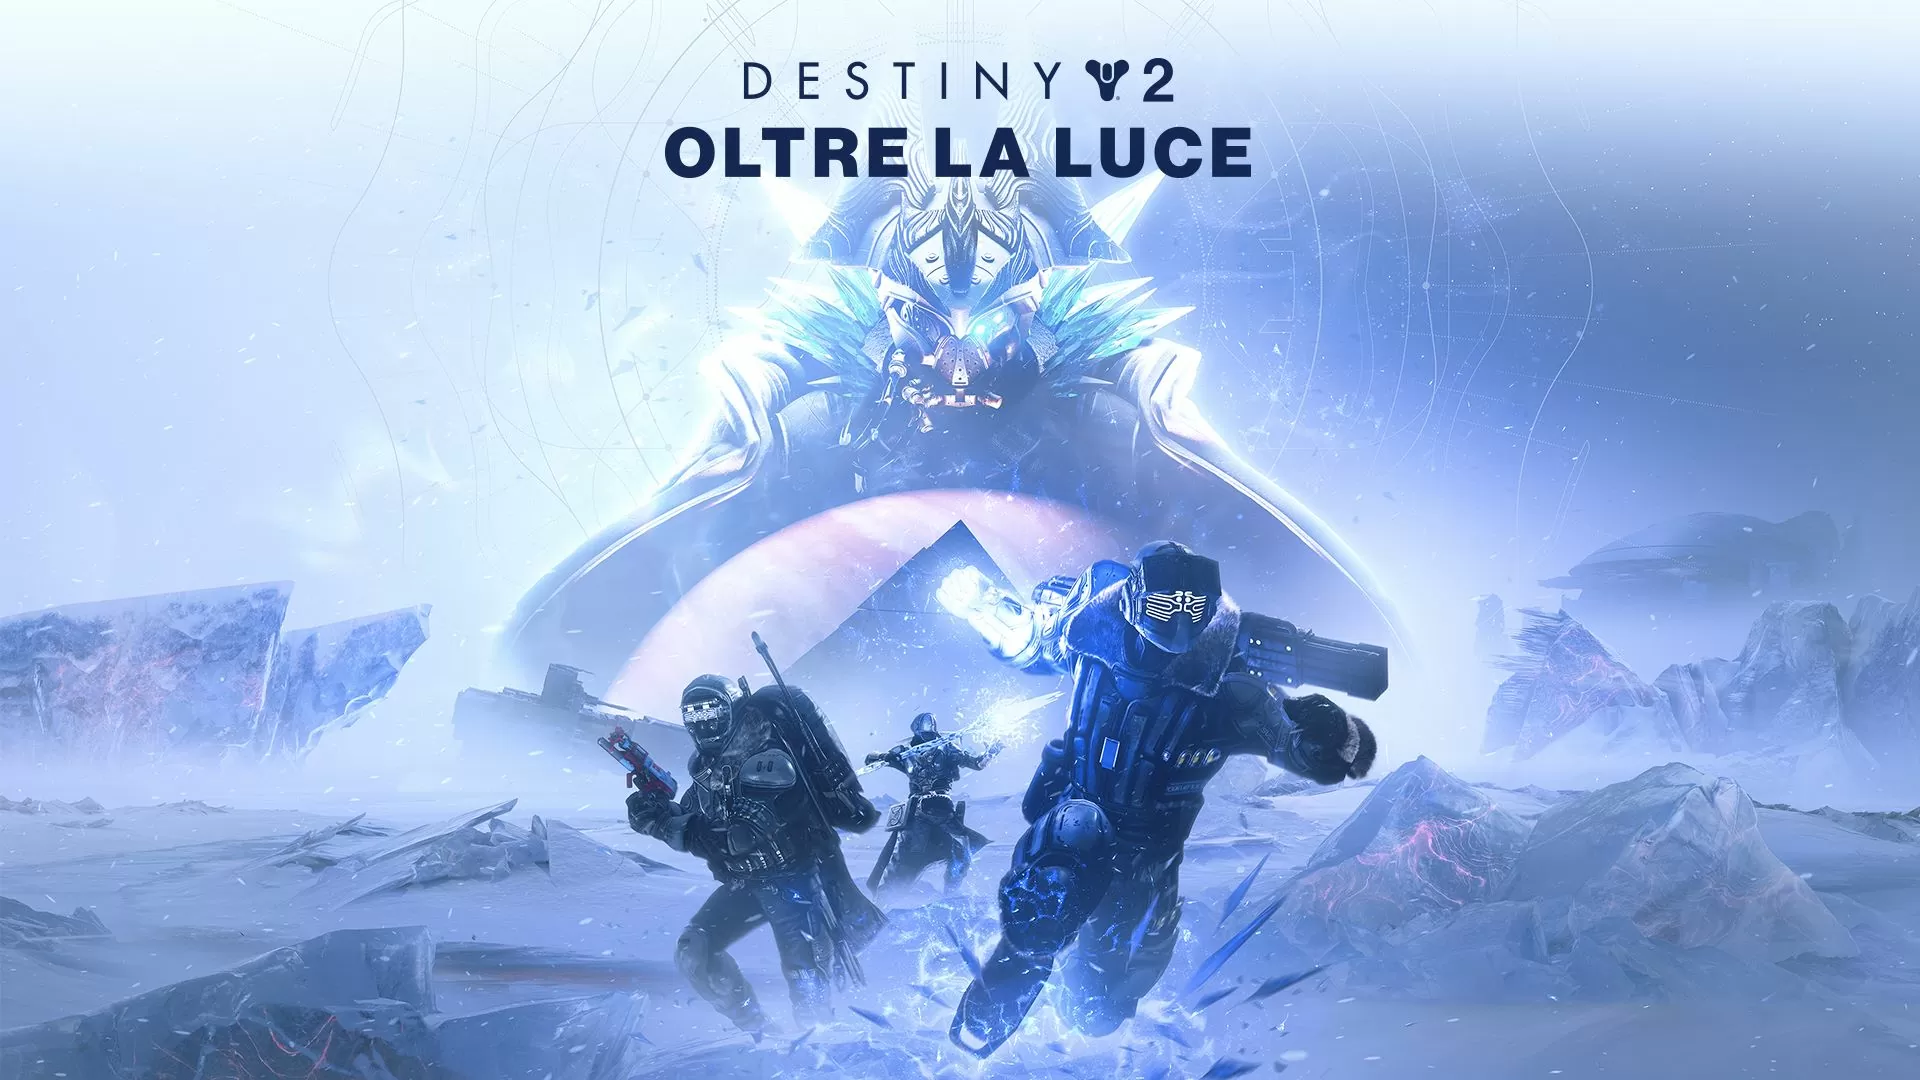 Destiny 2 – Oltre la Luce, la recensione: la nuova epopea di Bungie!